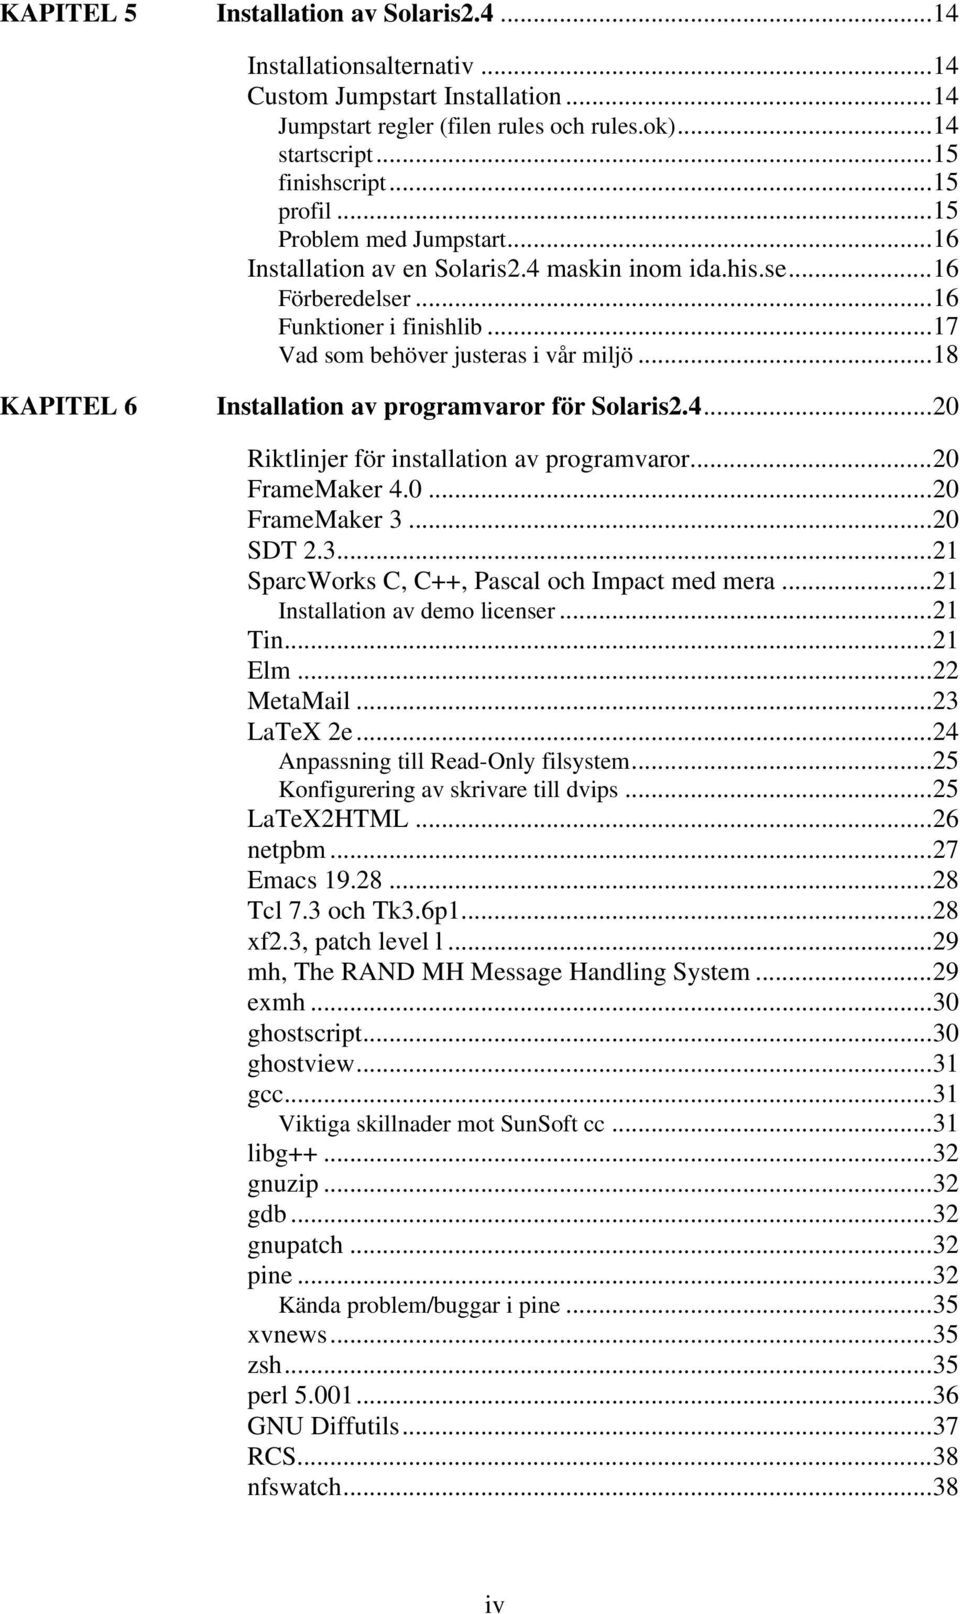 ..18 KAPITEL 6 Installation av programvaror för Solaris2.4...20 Riktlinjer för installation av programvaror...20 FrameMaker 4.0...20 FrameMaker 3...20 SDT 2.3...21 SparcWorks C, C++, Pascal och Impact med mera.